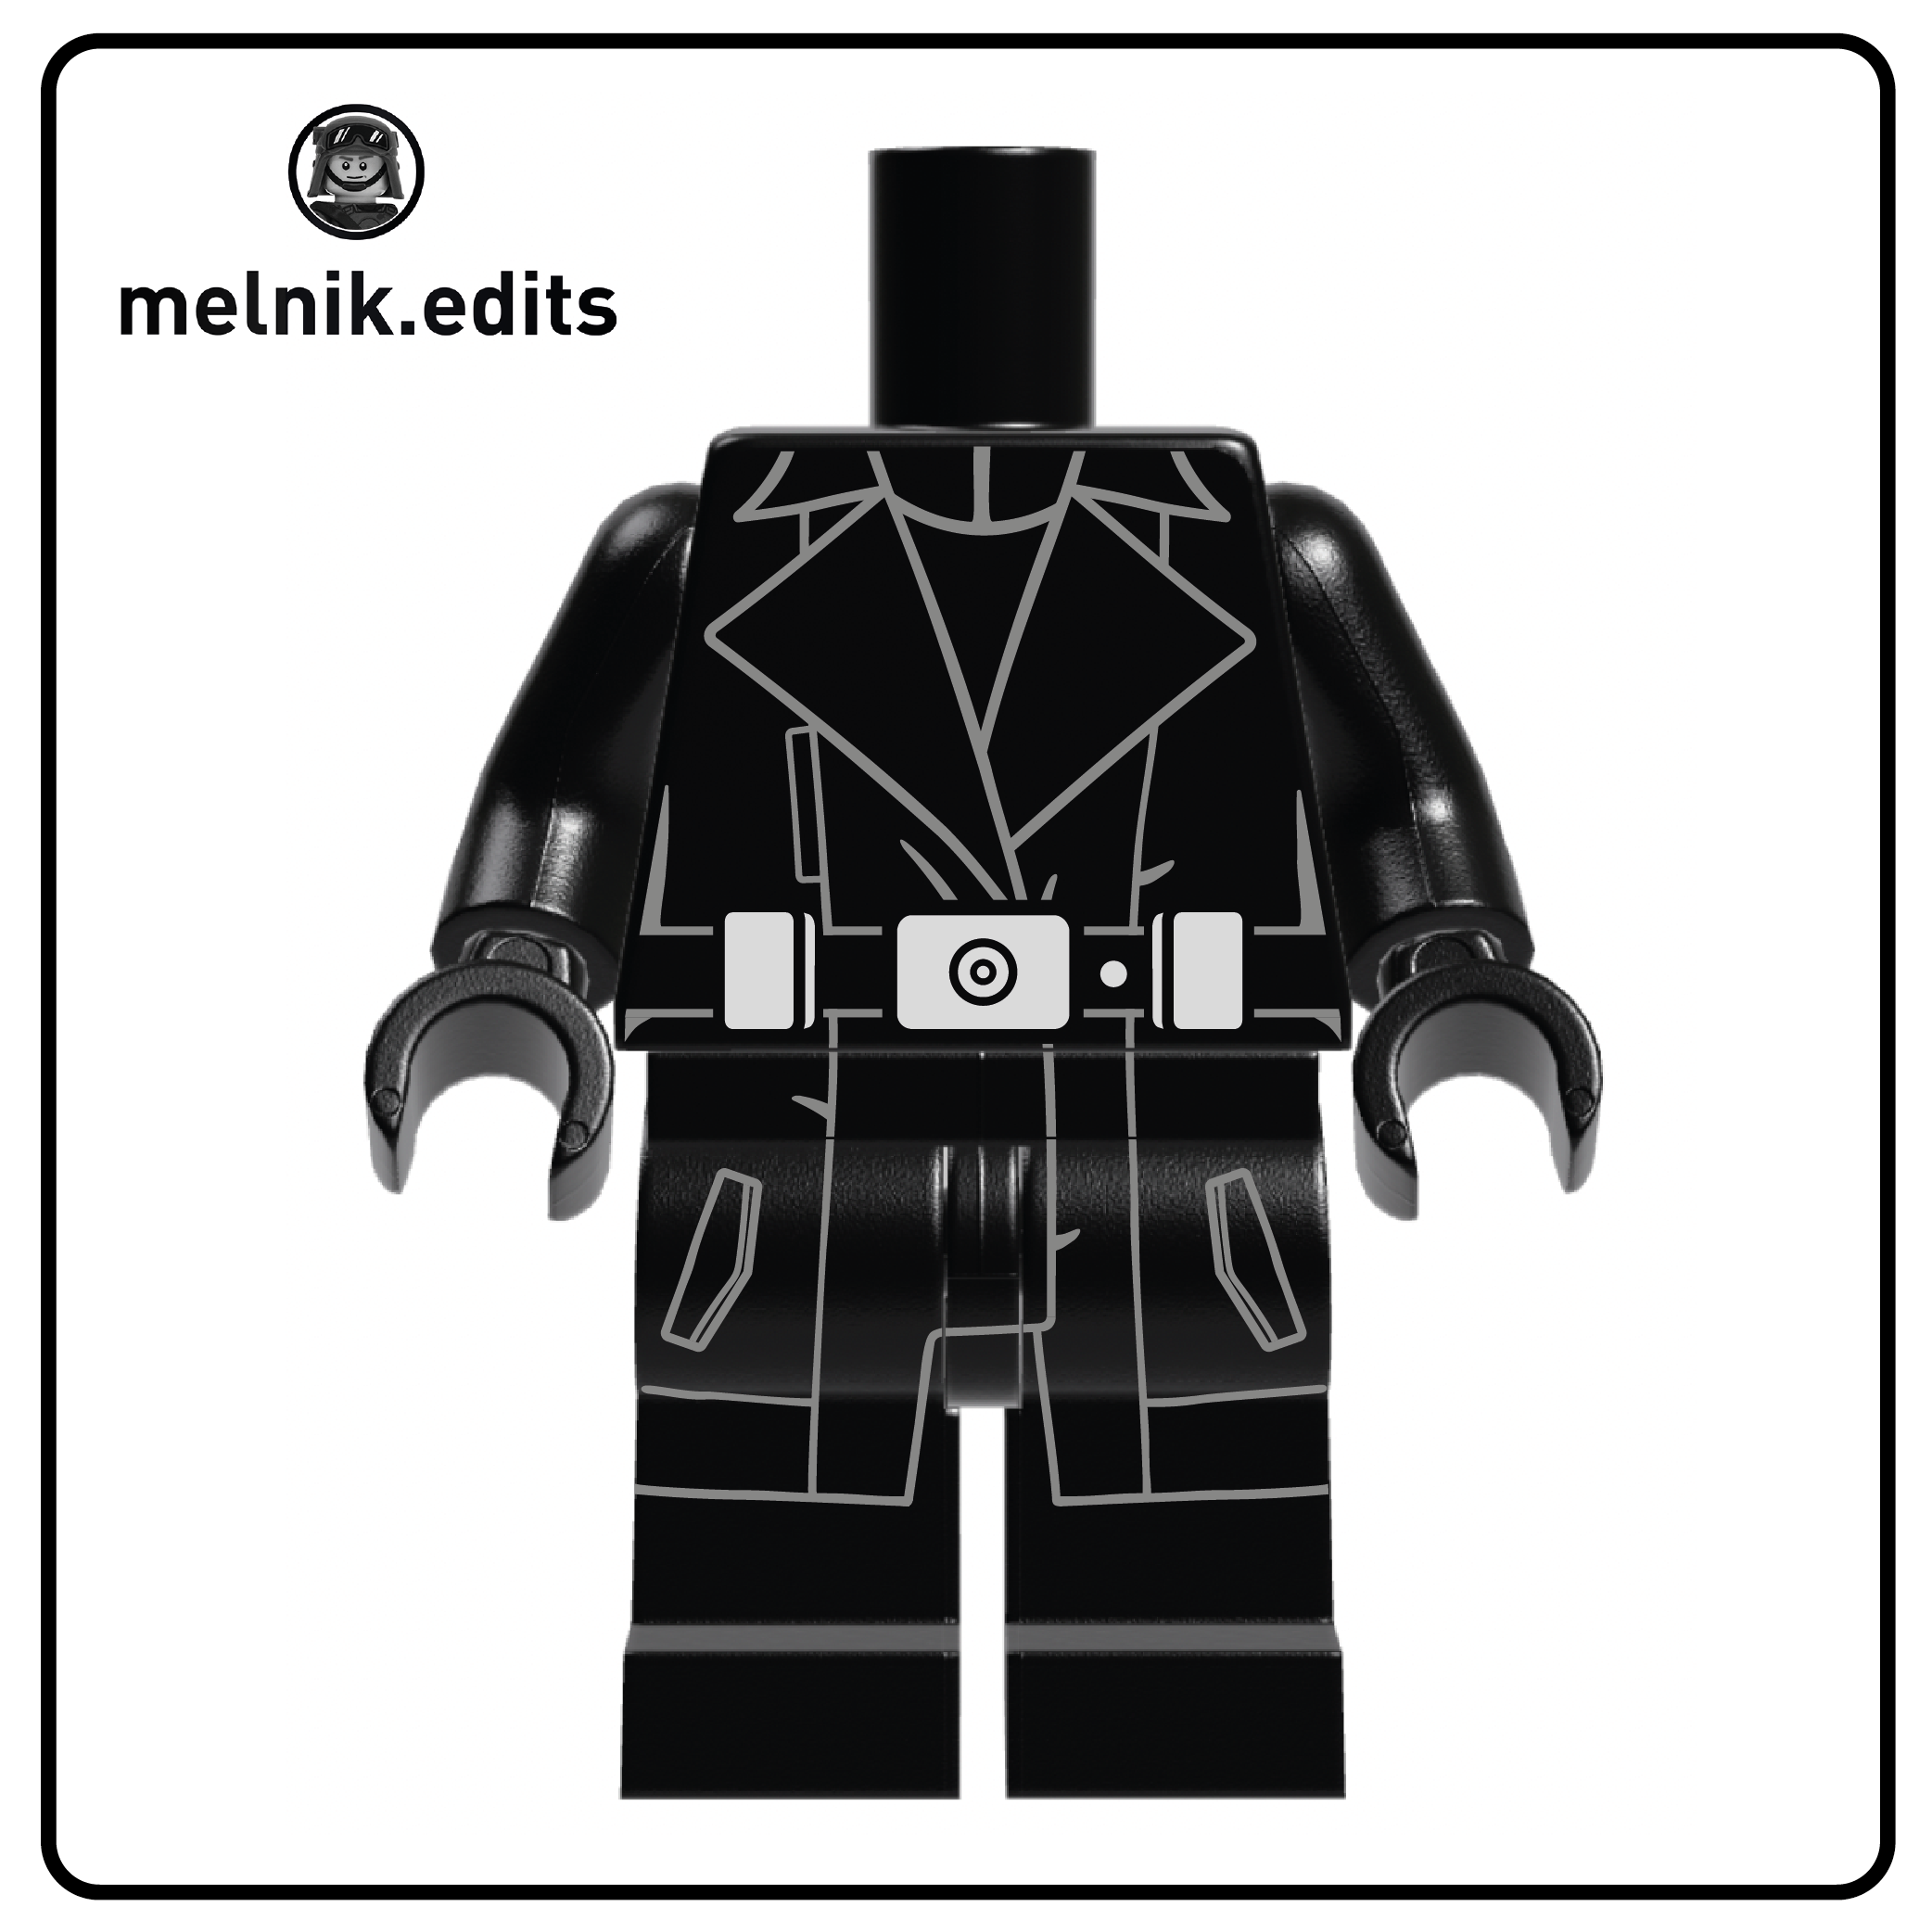 Black Trench Coat Body by Melnik.edits